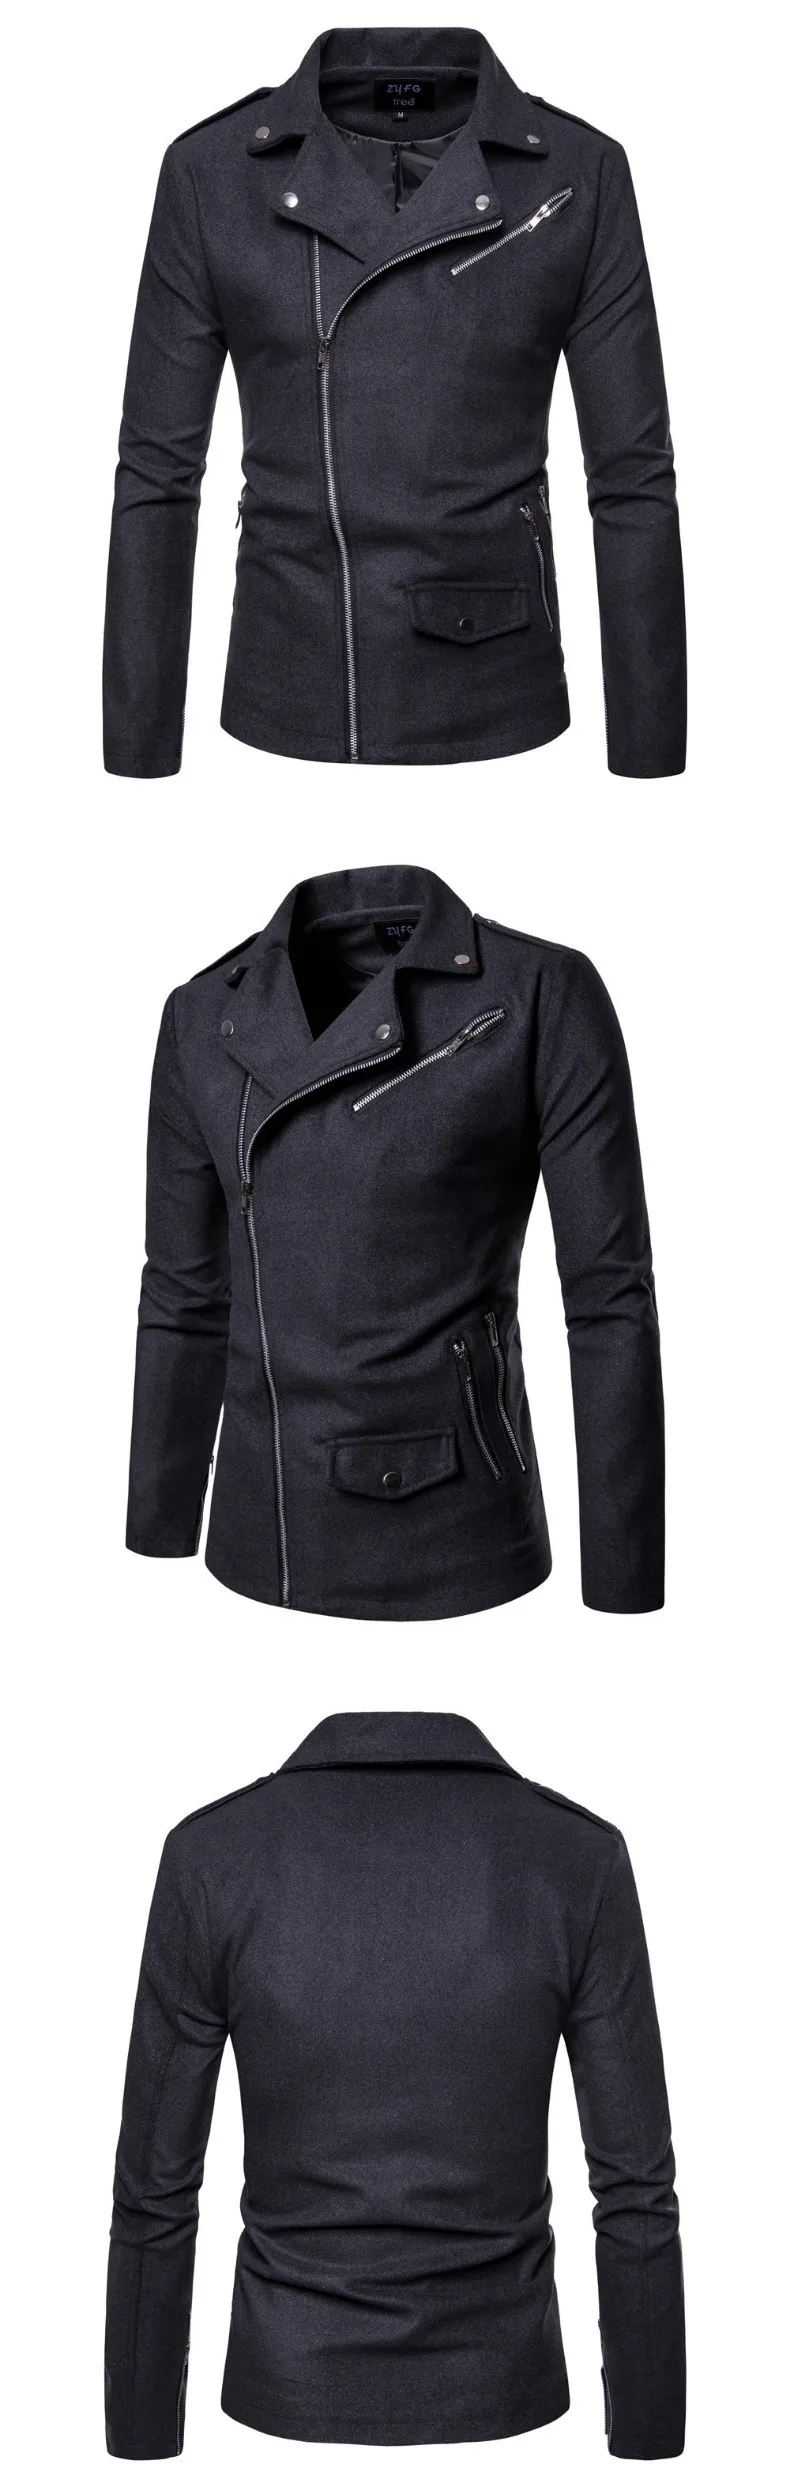 Новейший Дизайн мотоциклетная куртка мужская повседневная шерстяная куртка на молнии мужская верхняя одежда модная байкерская куртка Casaco Masculino